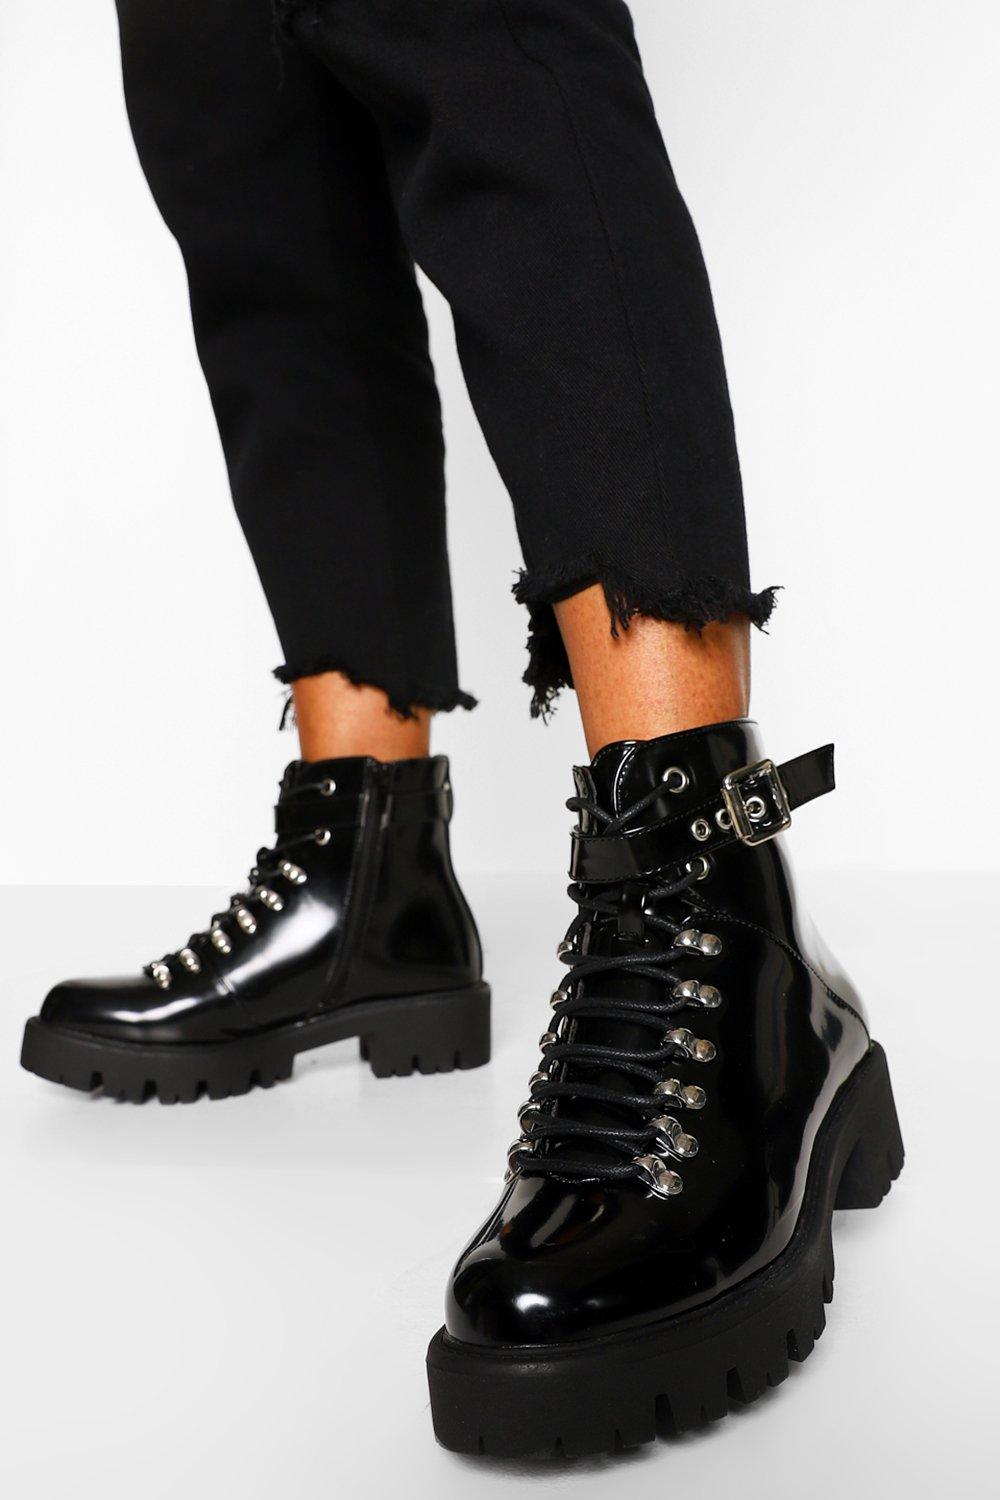 boohoo boots black